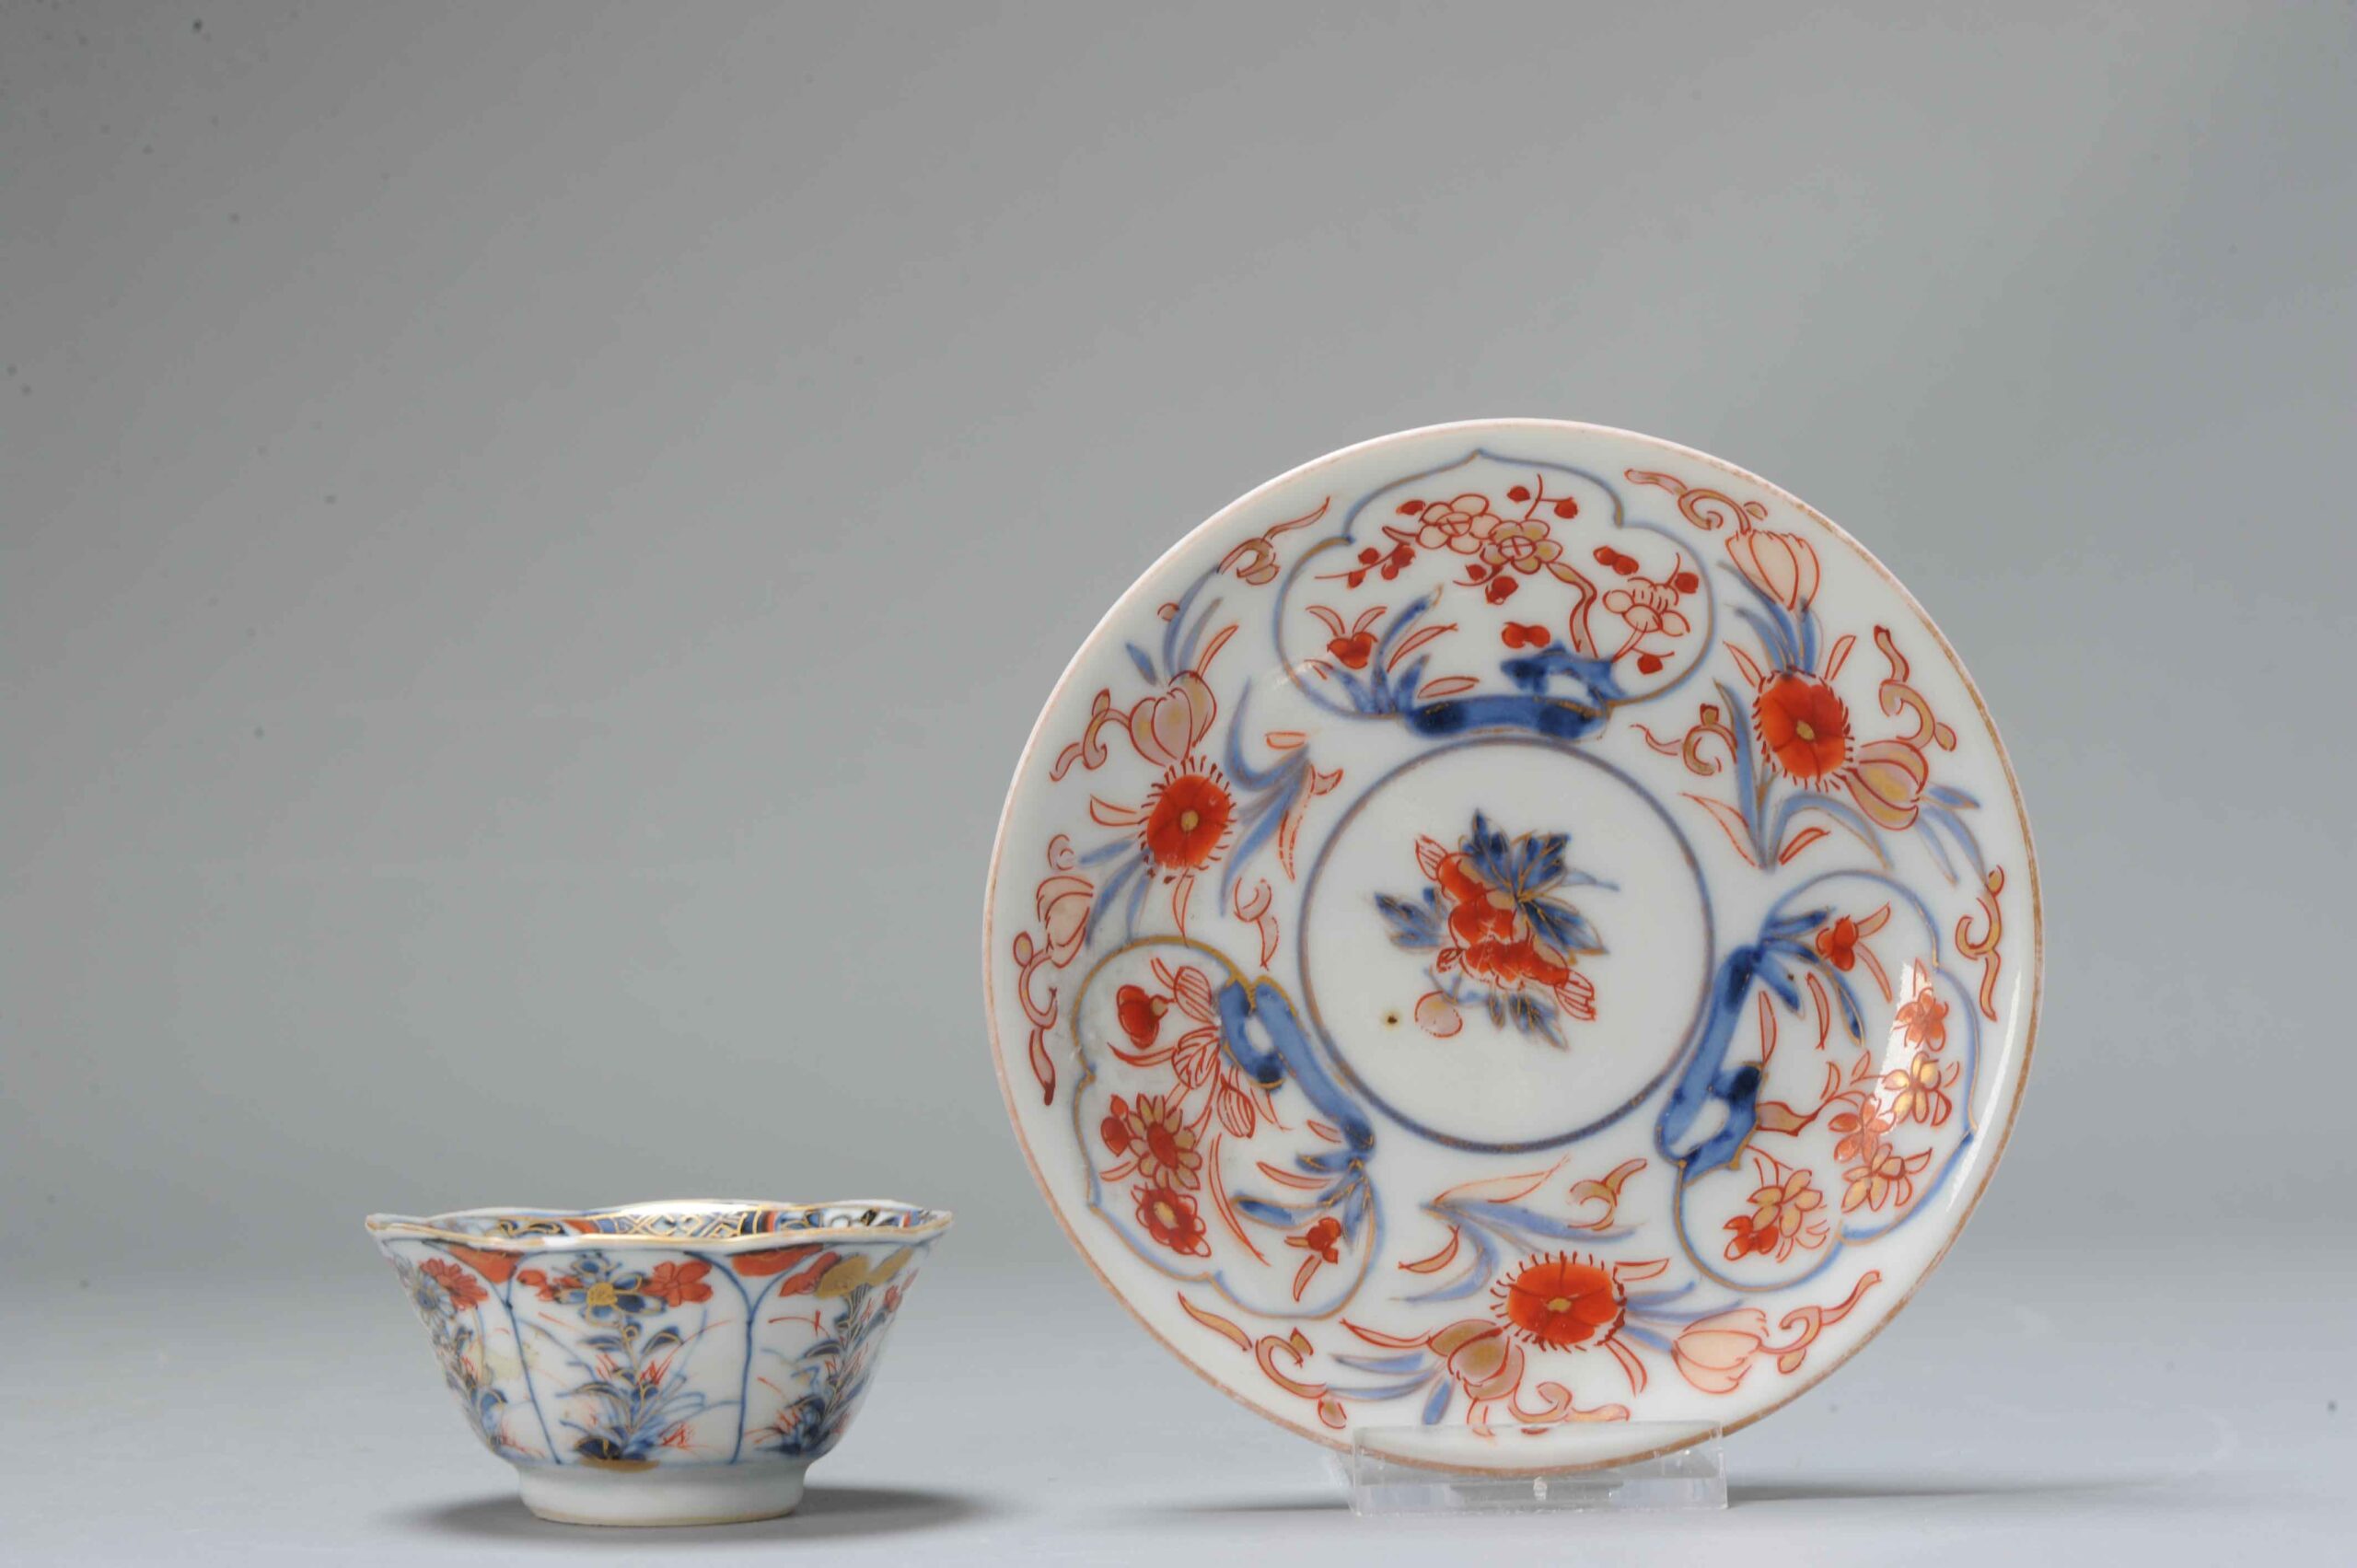 Antique Japanese/Chinese Porcelain Kangxi period Tea Bowl Floral Imari